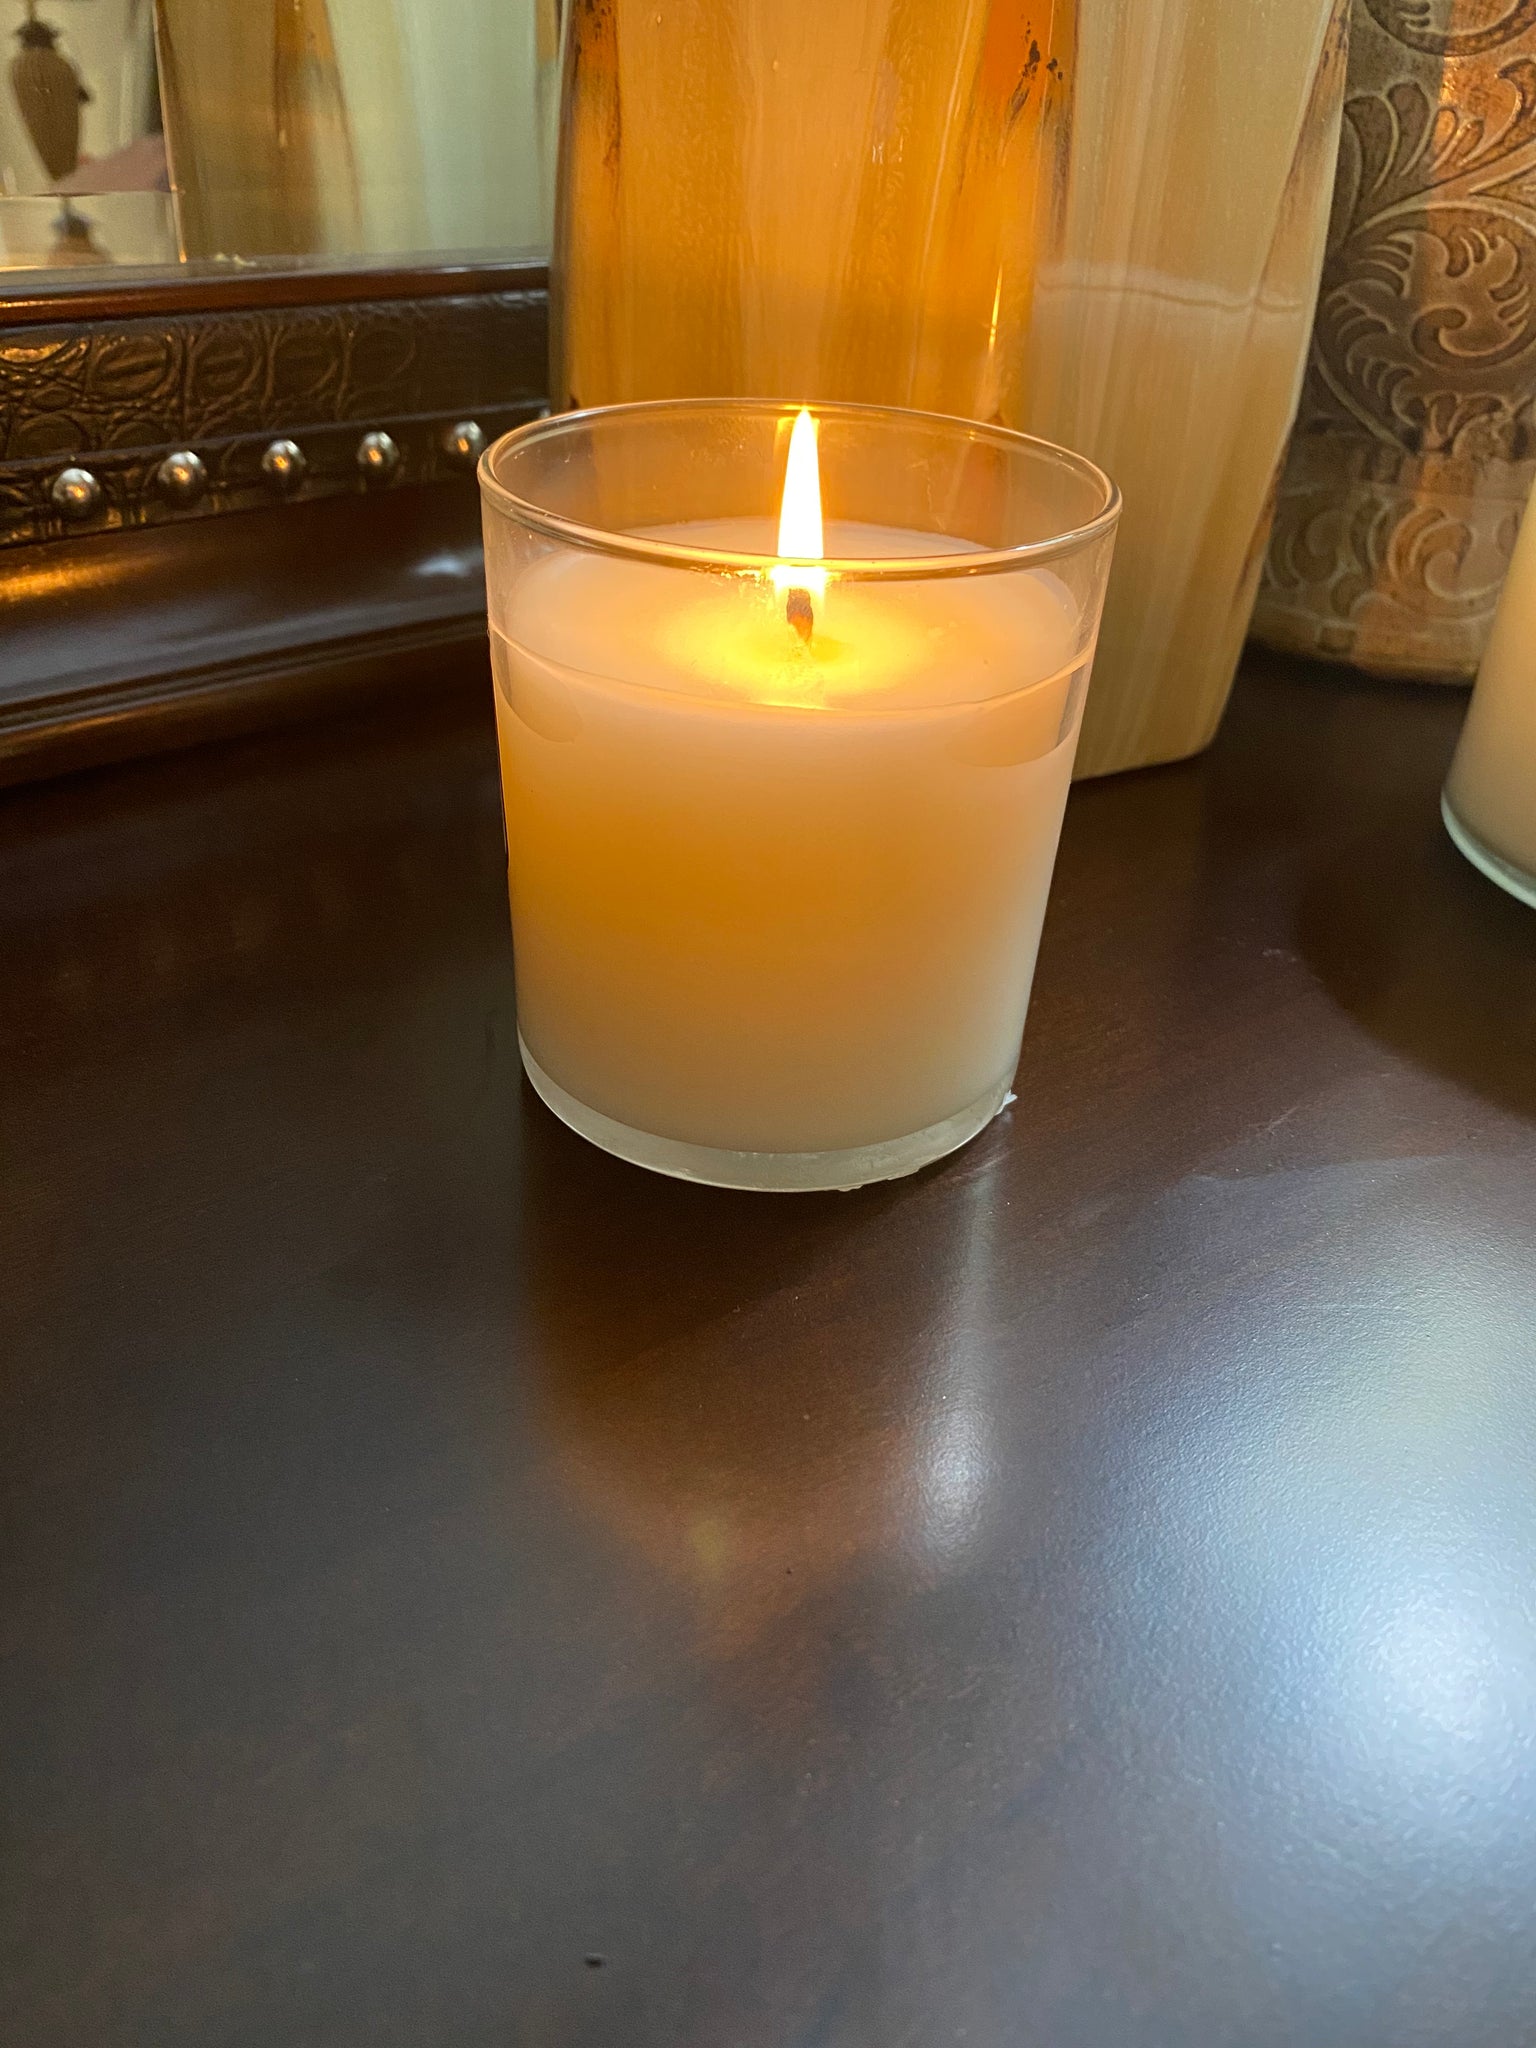 Bleu De Chanel – Wilson's Candle Co.